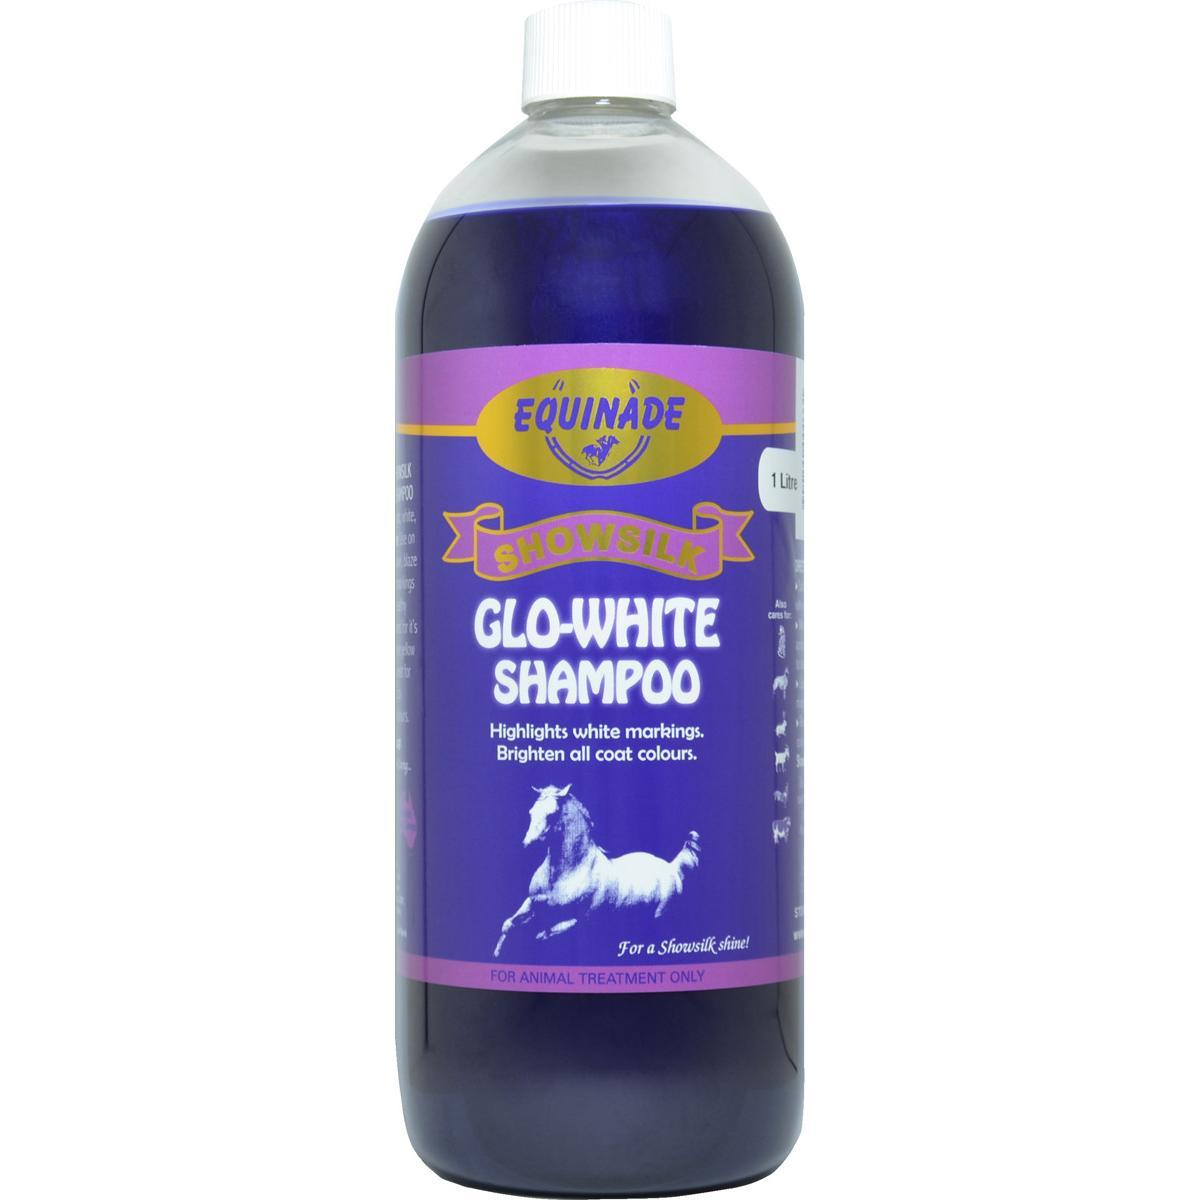 Equinade Showsilk Glo-Shampoo